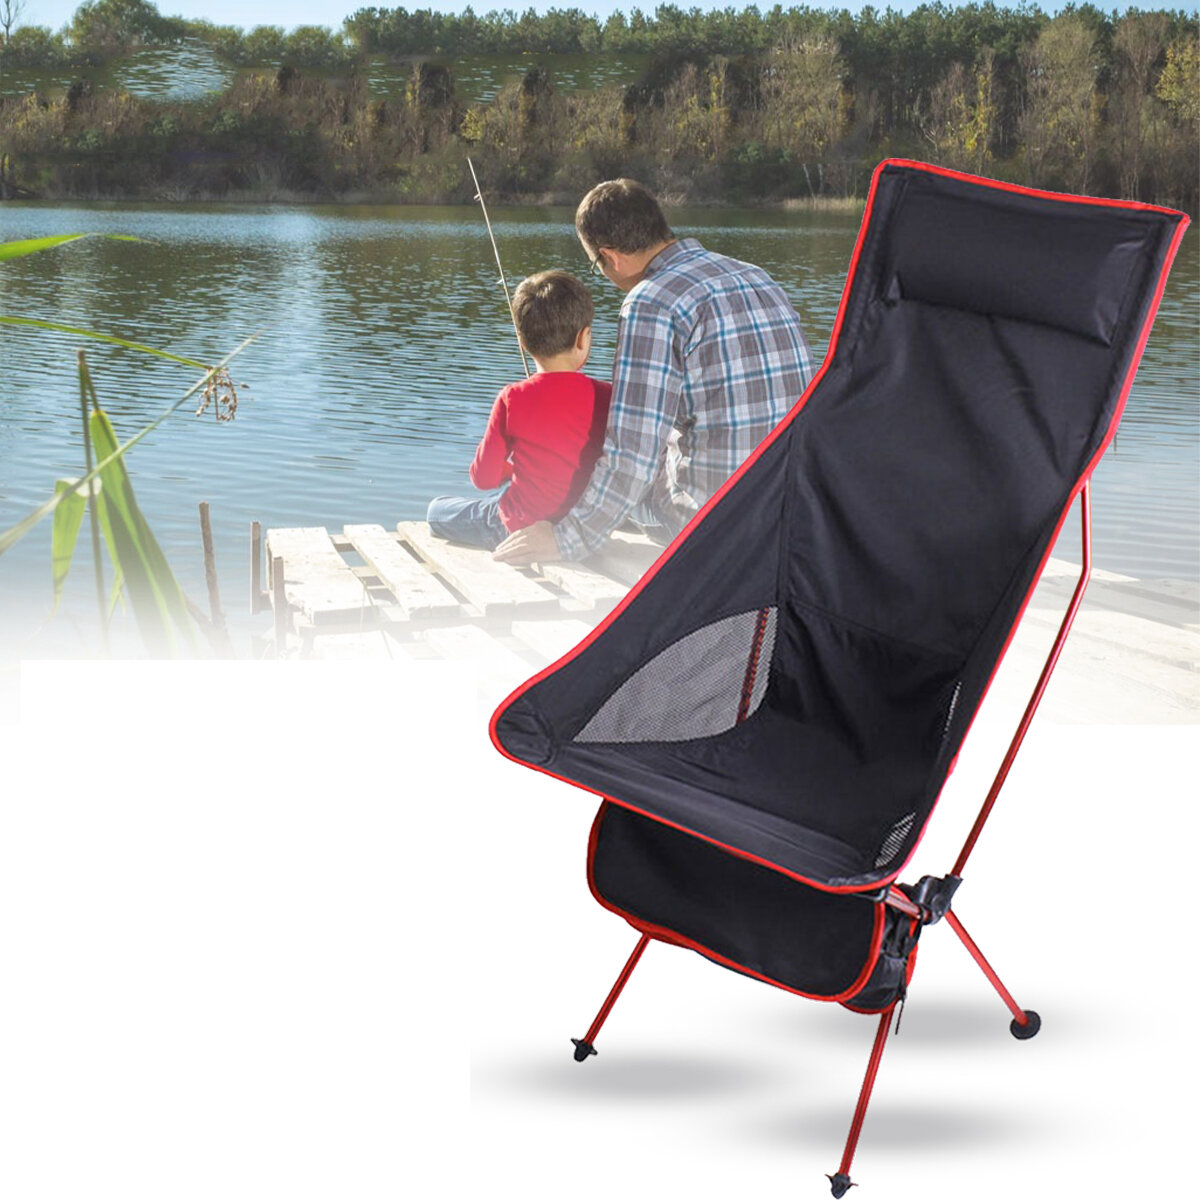 Складной стул легкий портативный стул из алюминиевого сплава для отдыха на природе, на пляже и в путешествиях.